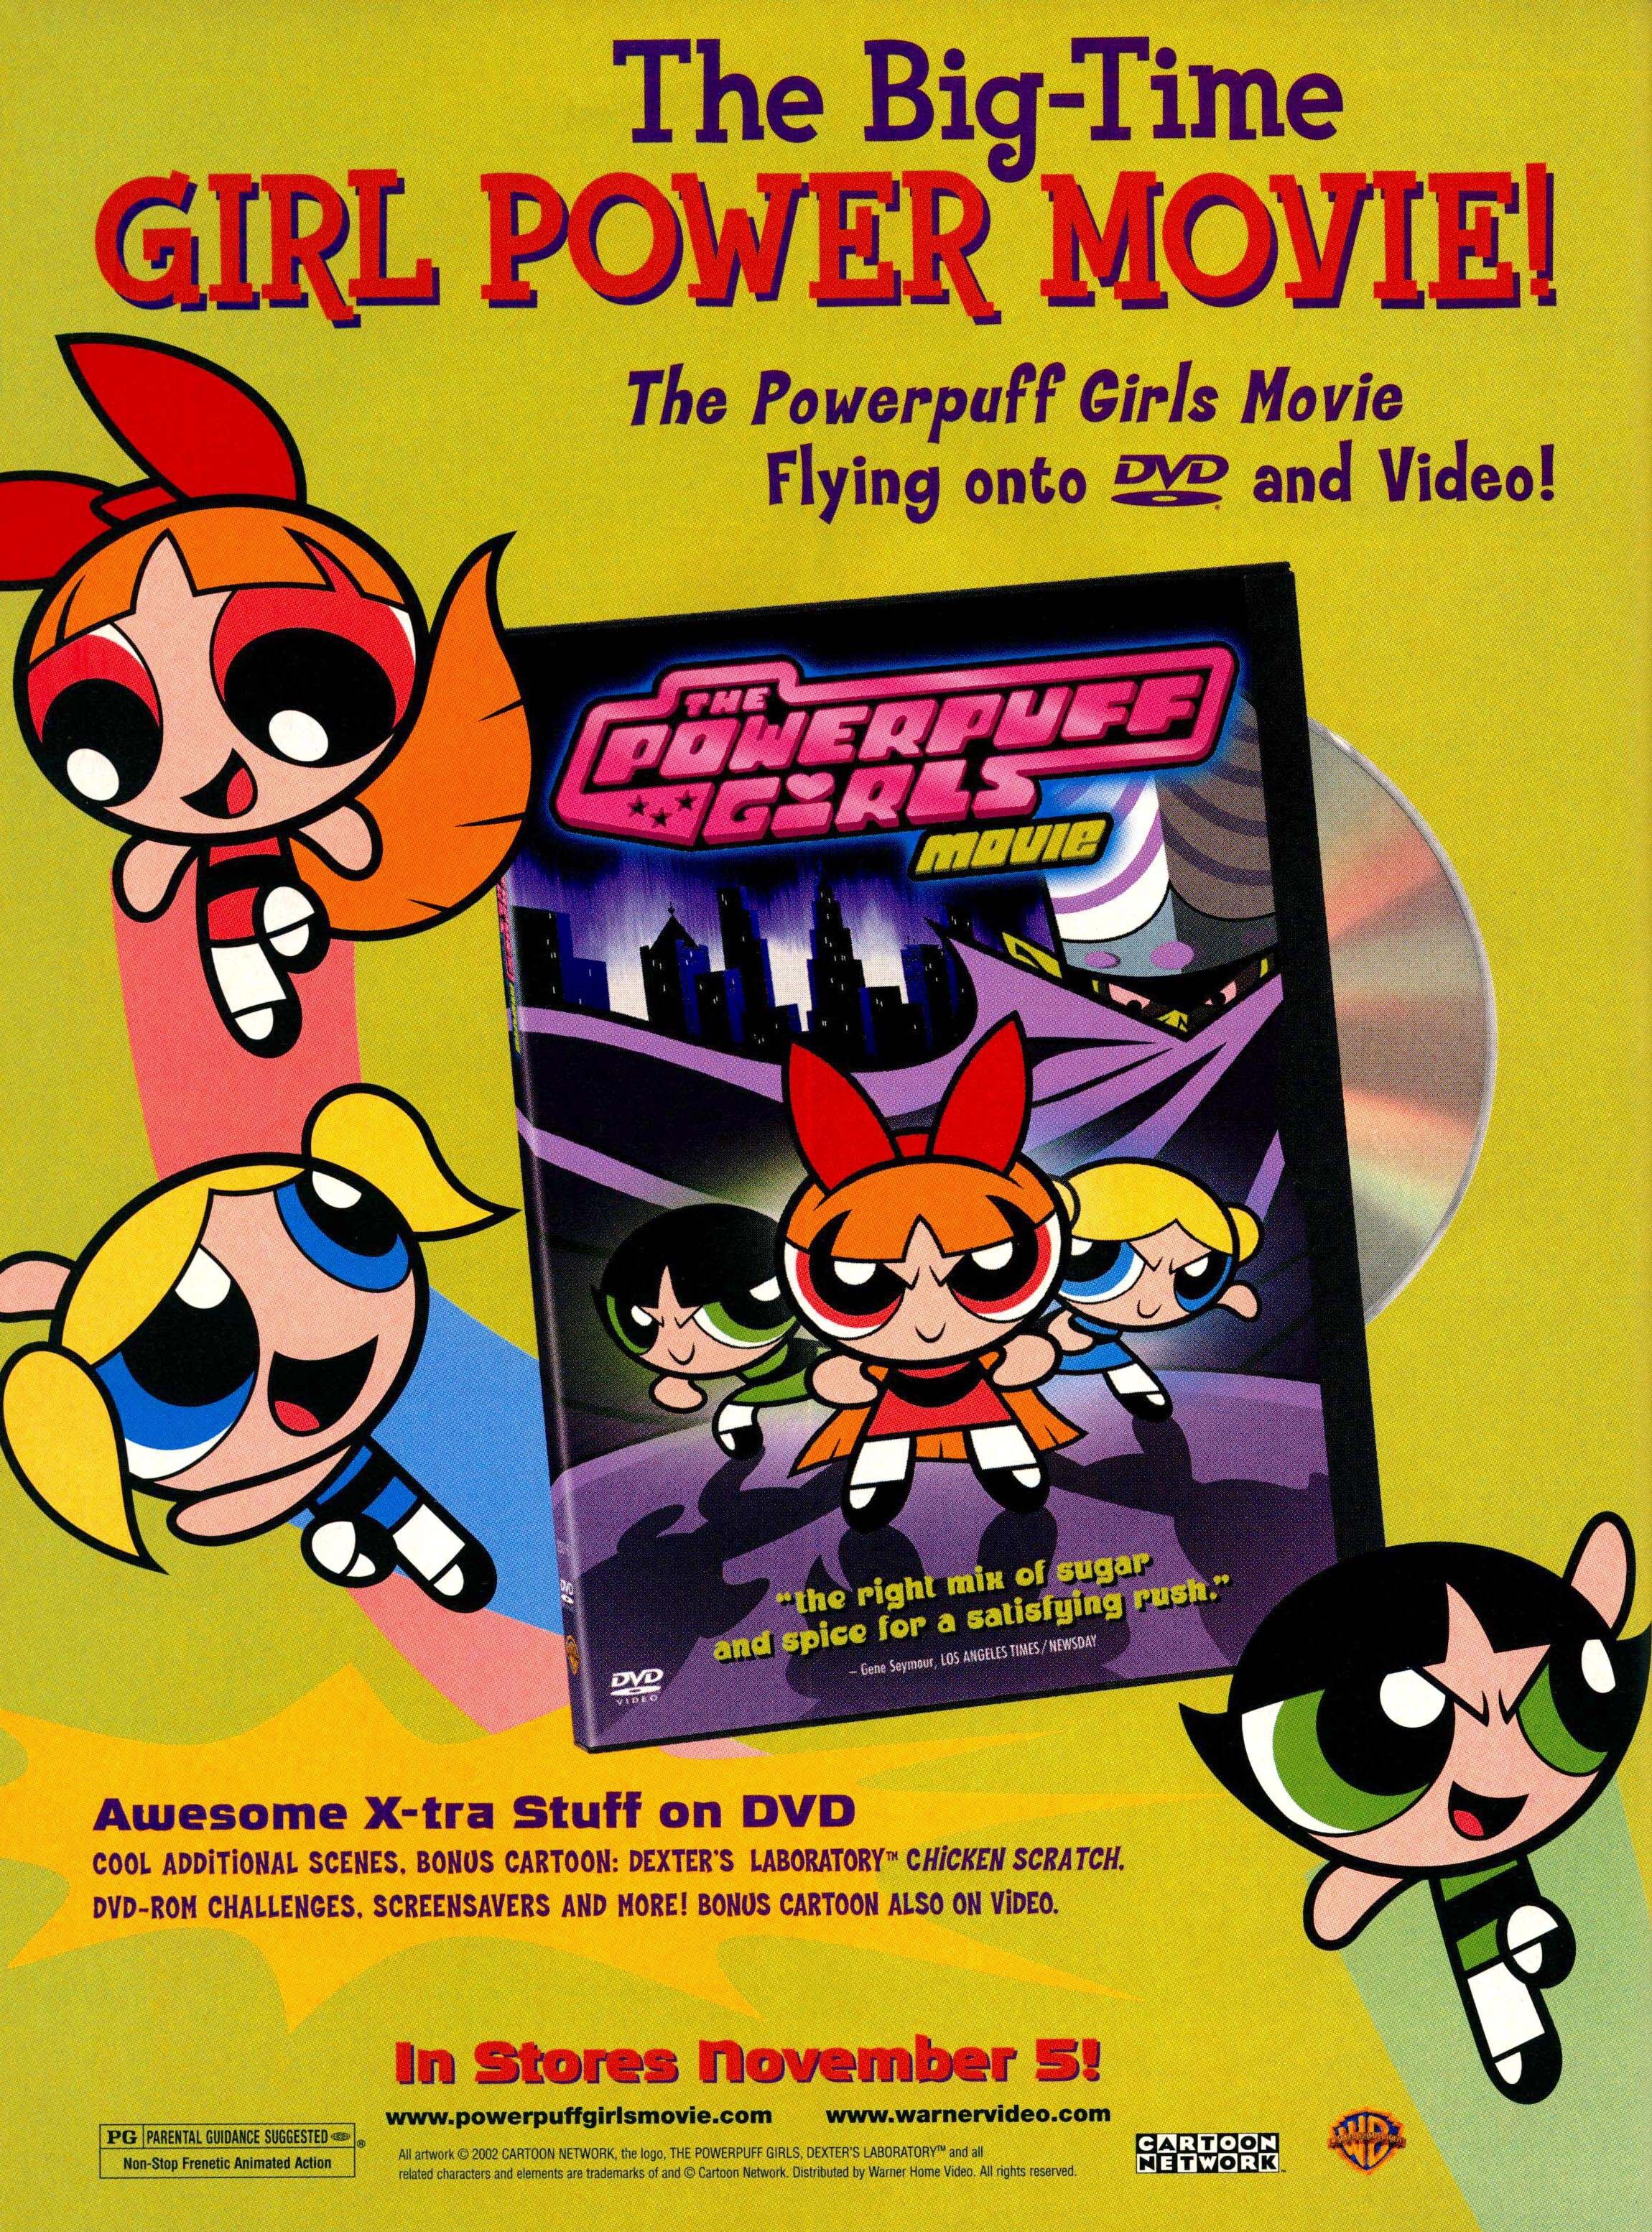 The powerpuff girls movie